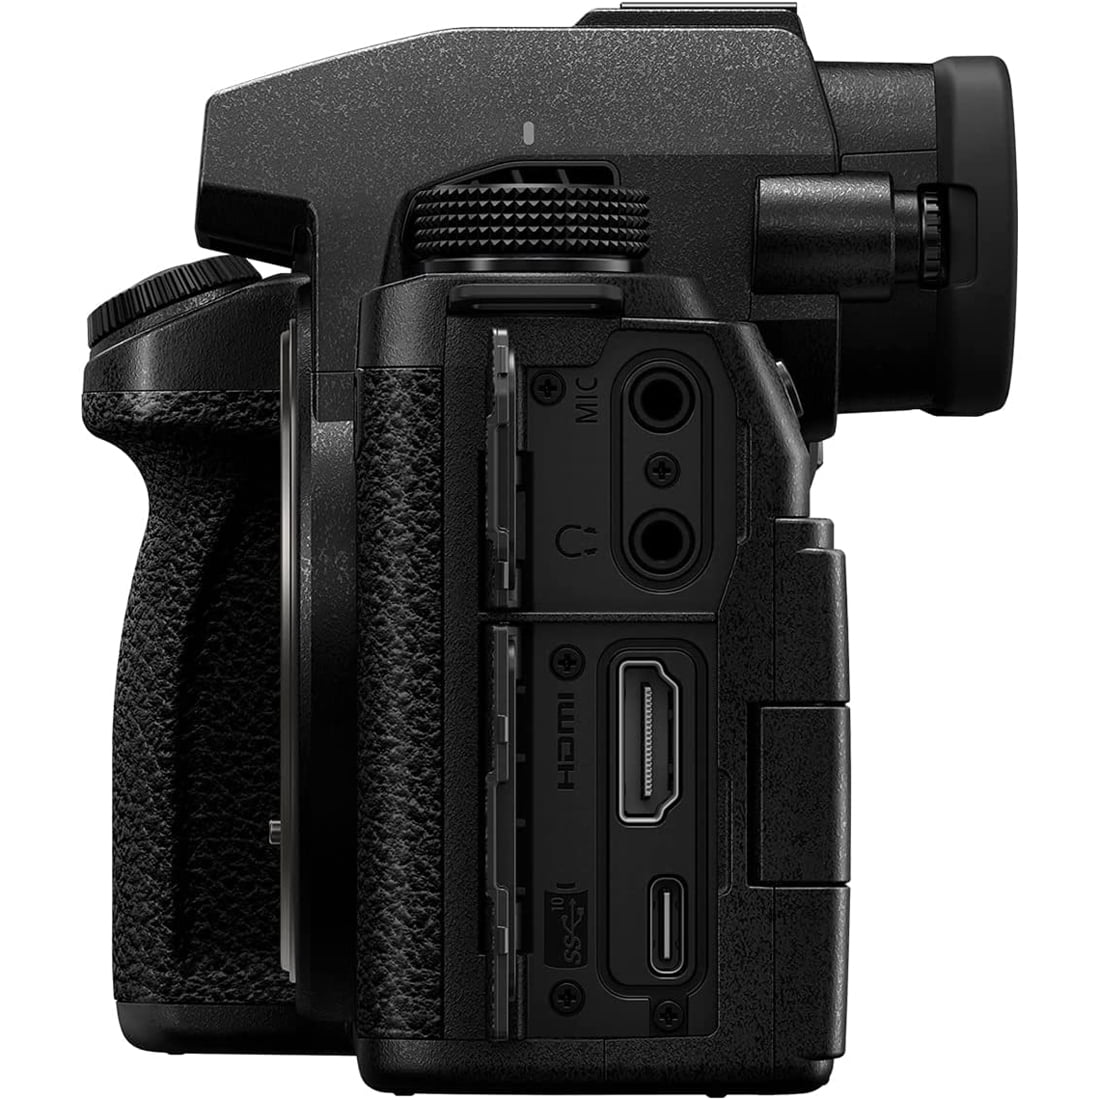 Panasonic Lumix S5IIX Full-Frame Mirrorless Camera with f/3.5-5.6 20-60mm  Lens, DC-S5M2XKK